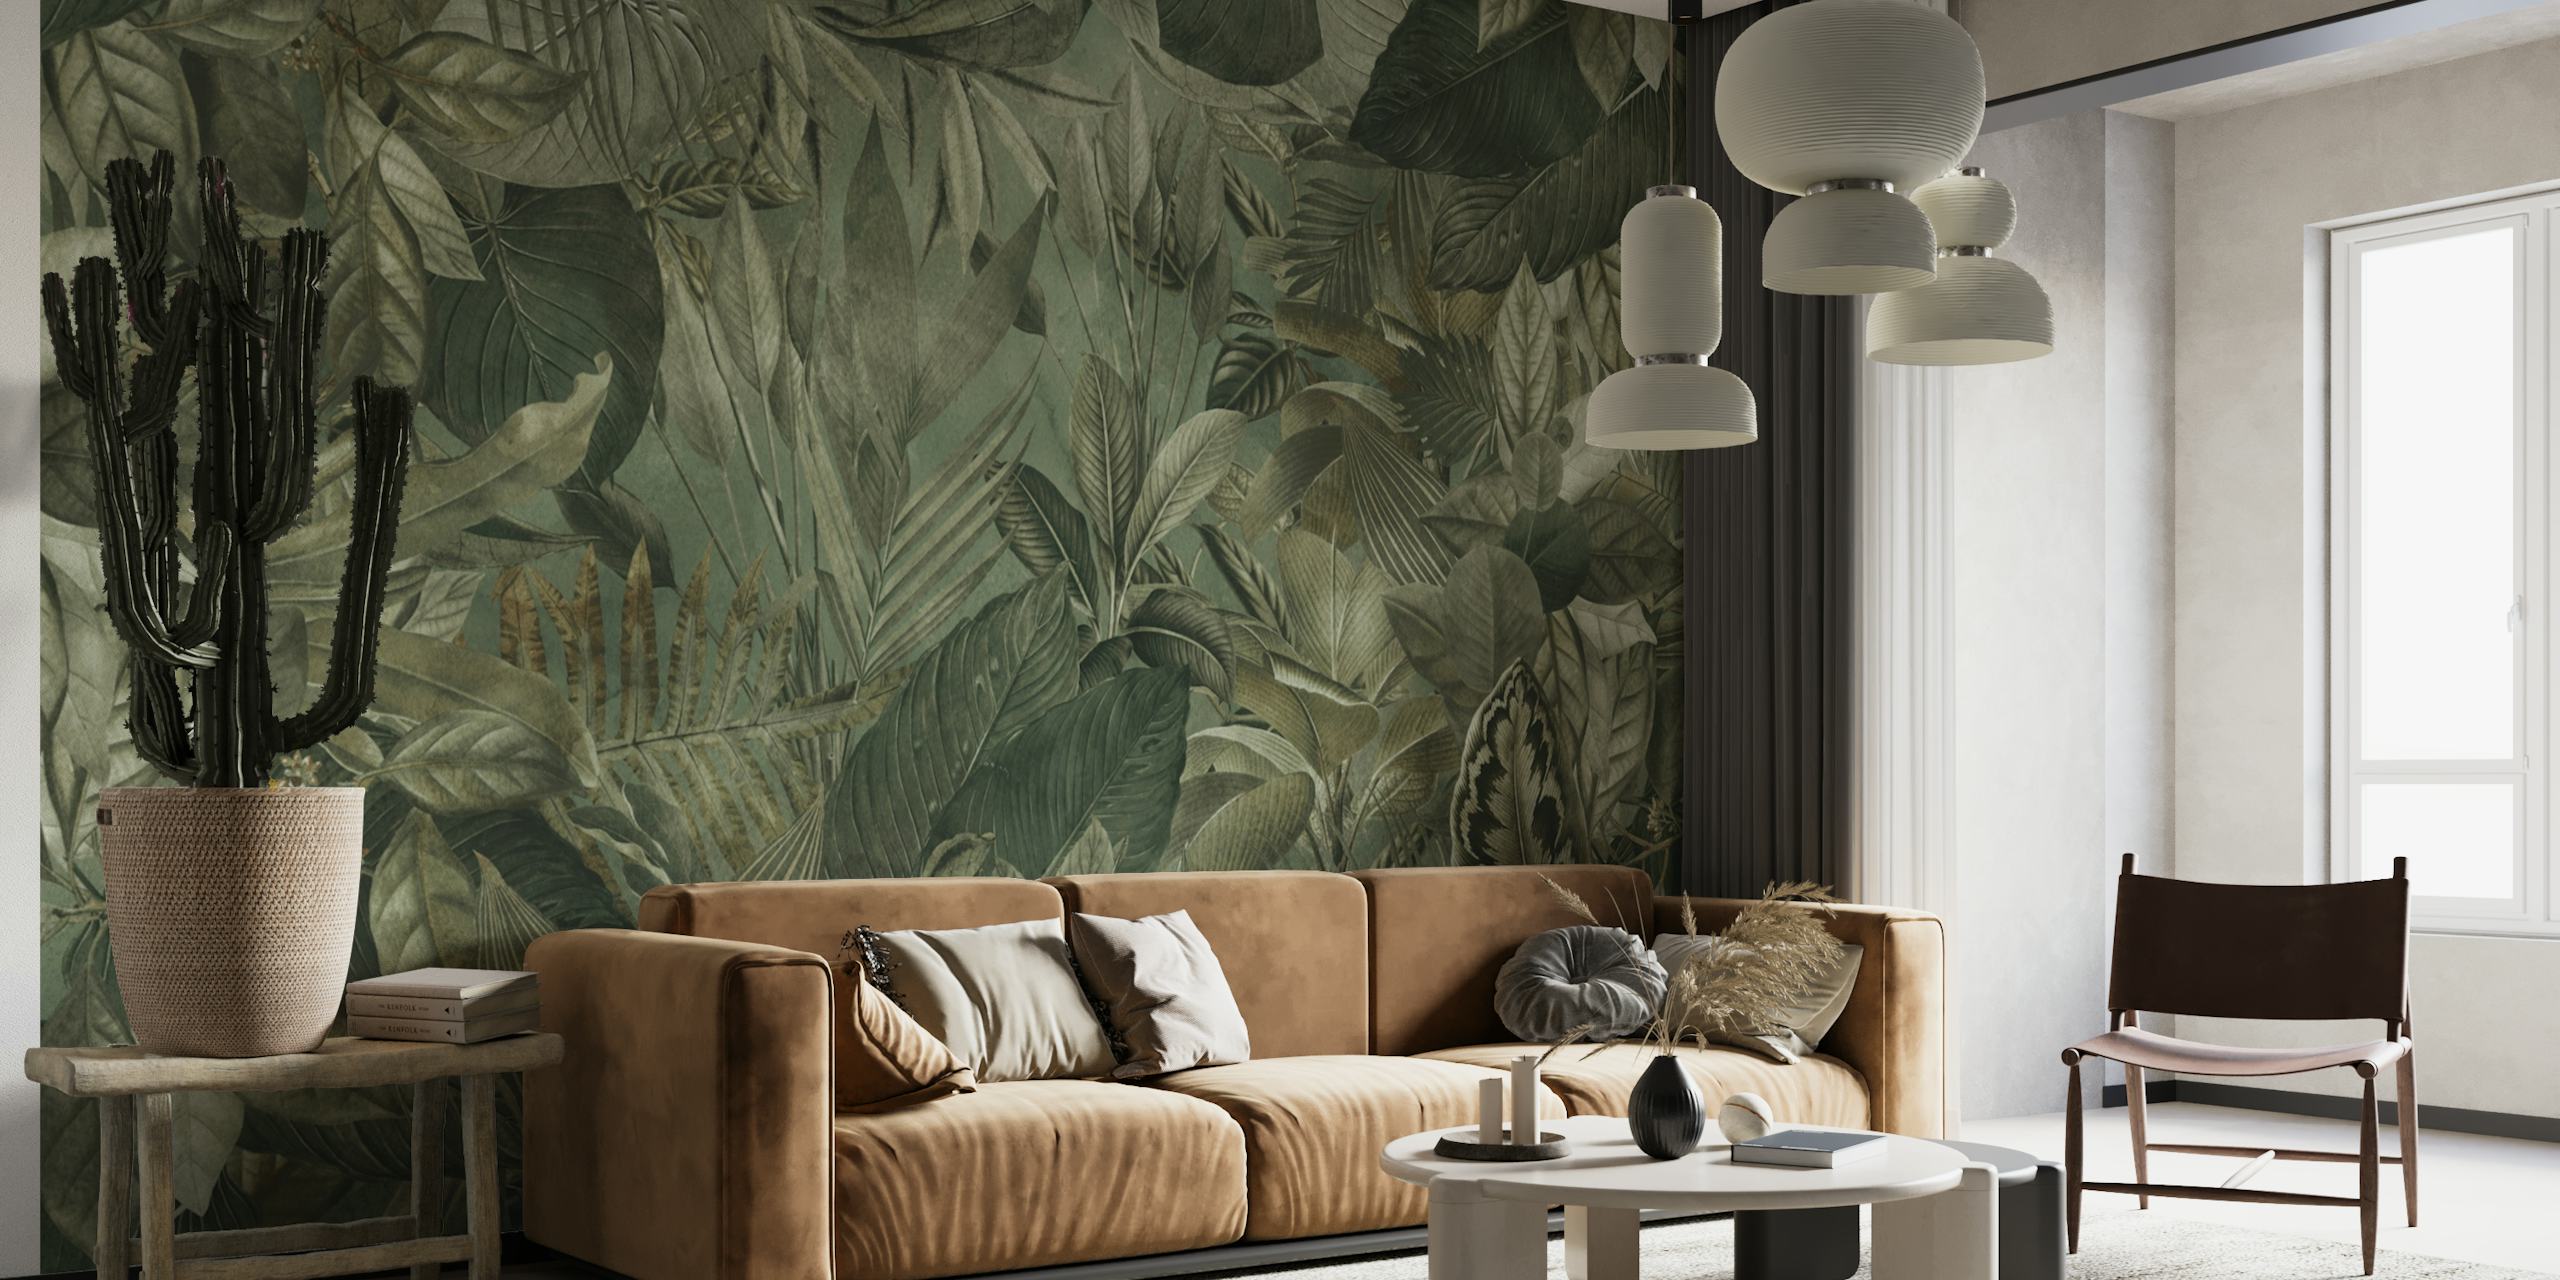 Peinture murale sur le thème de la jungle tropicale mettant en valeur un feuillage vert olive et des éléments botaniques.